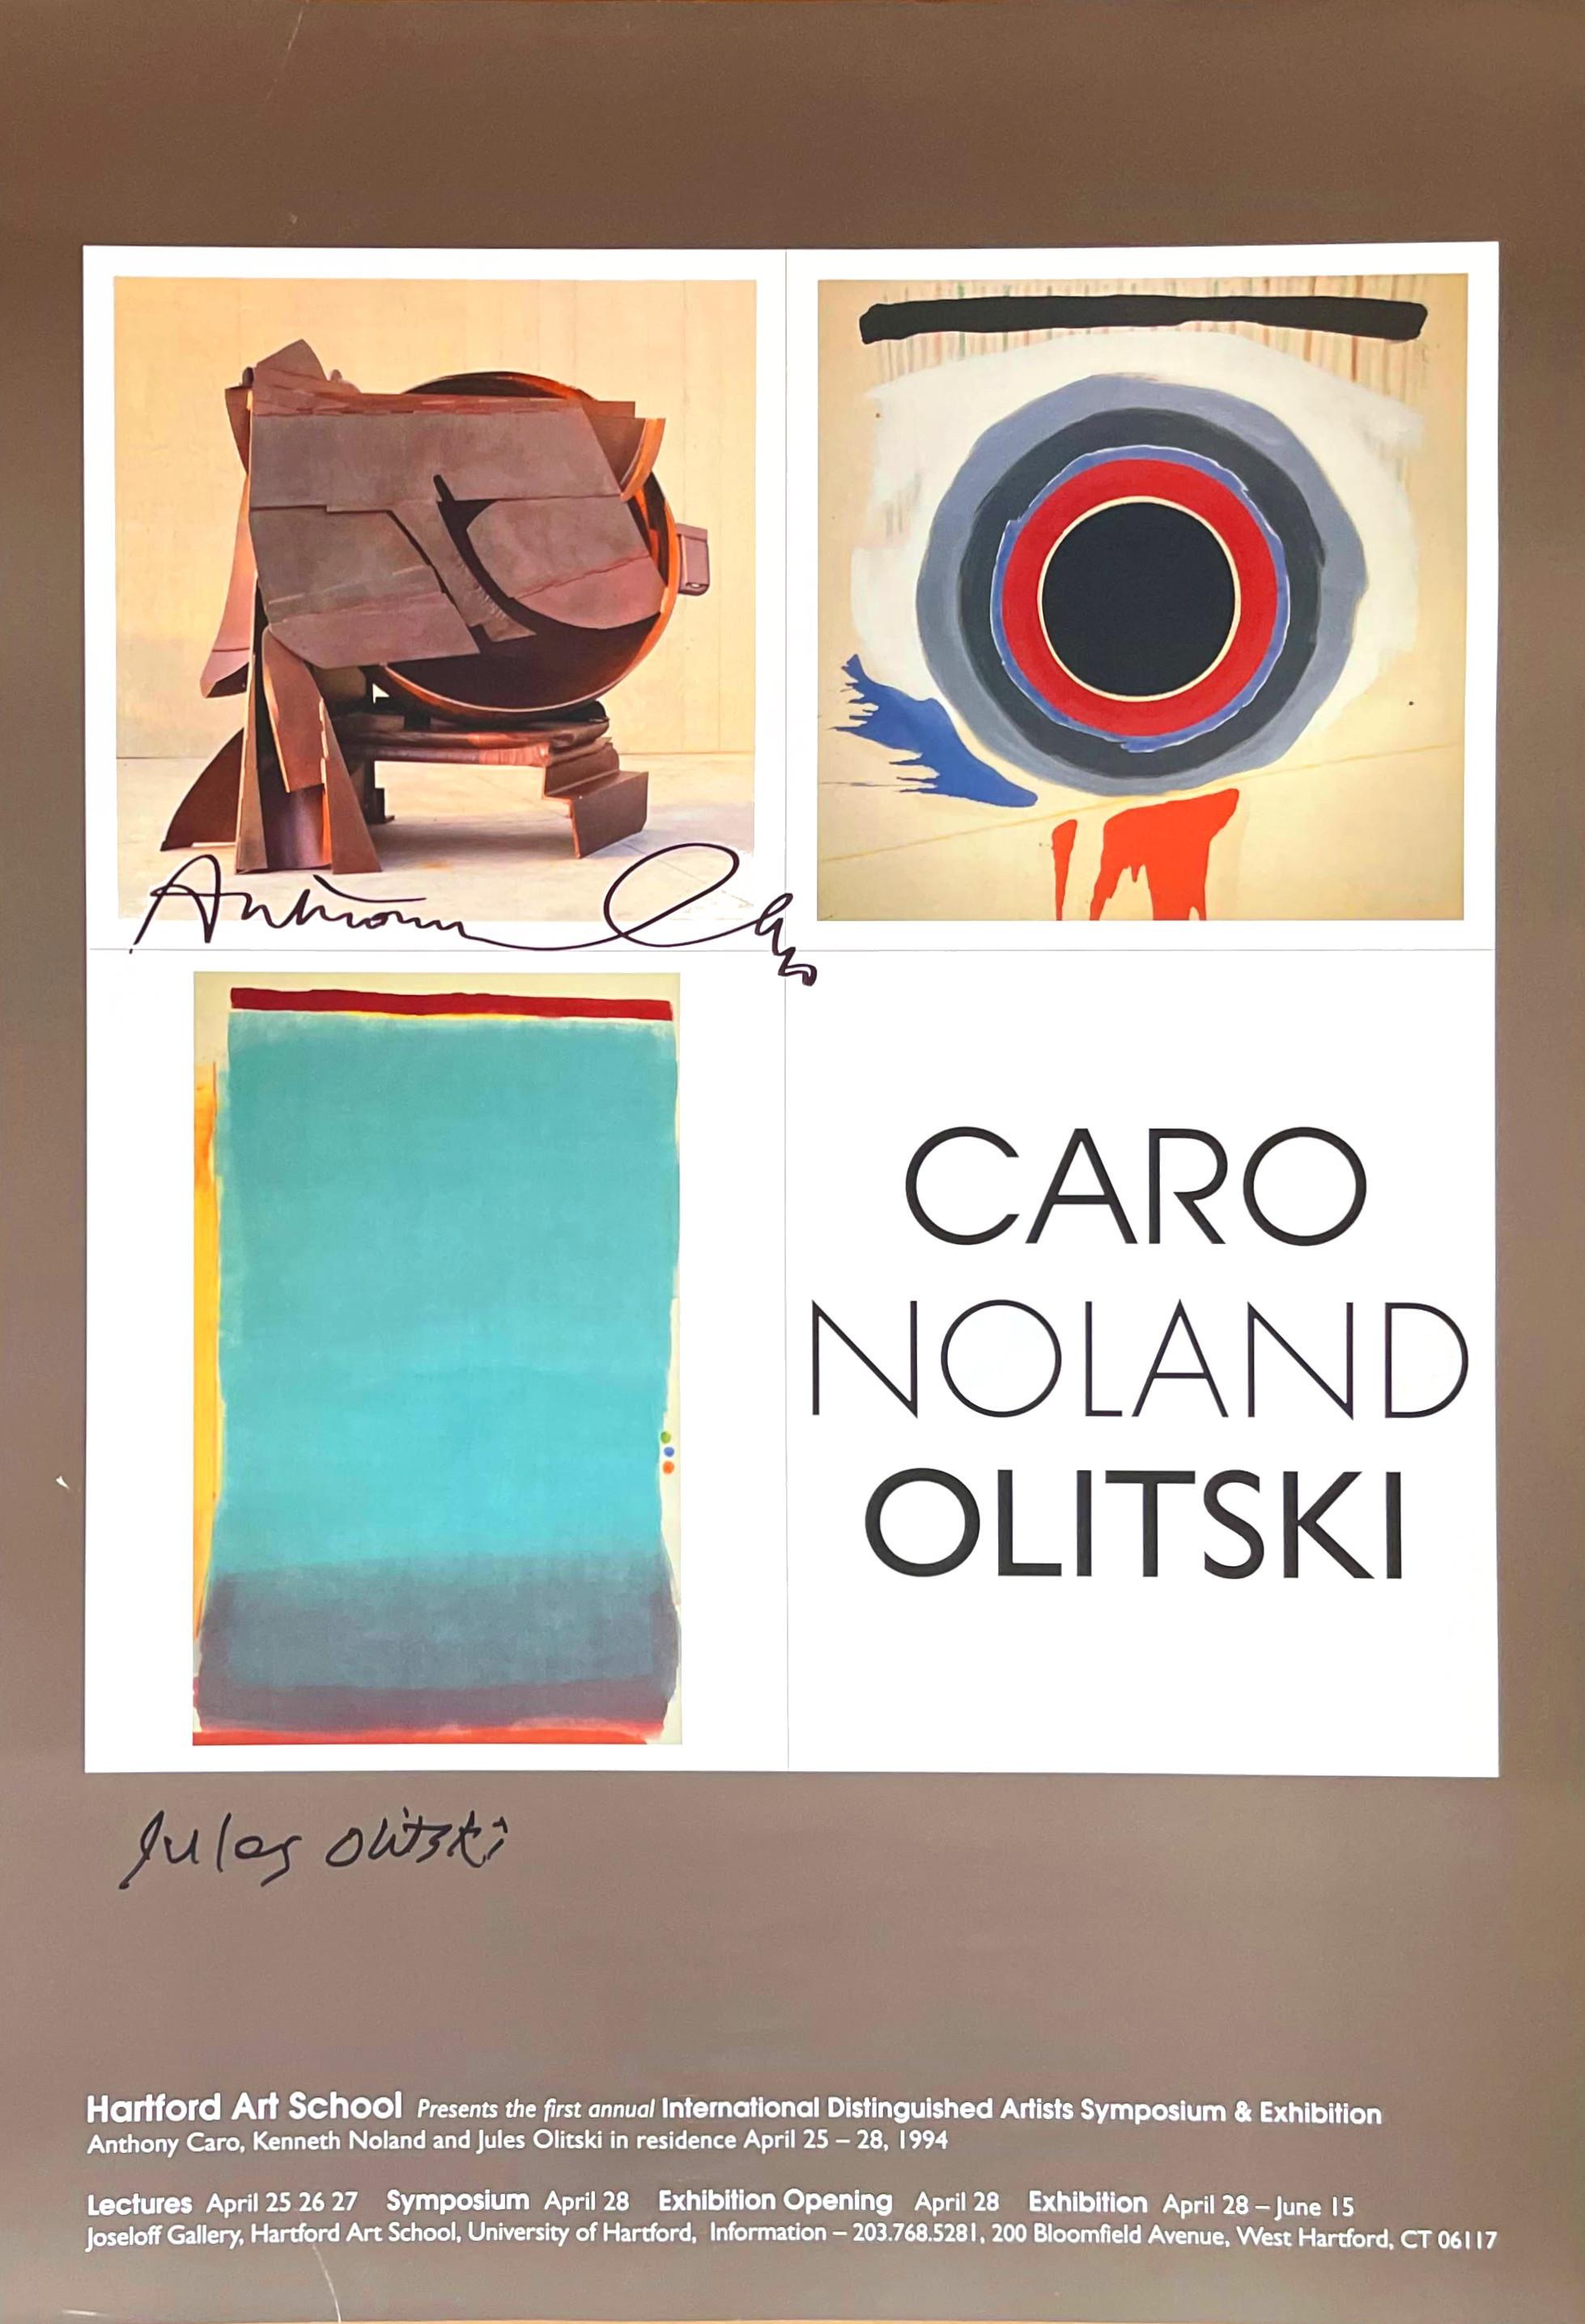 Anthony Caro, Kenneth Noland, Jules Olitski Abstract Print - CARO, NOLAND & OLITSKI (Hand signed poster by Anthony Caro and Jules Olitski)